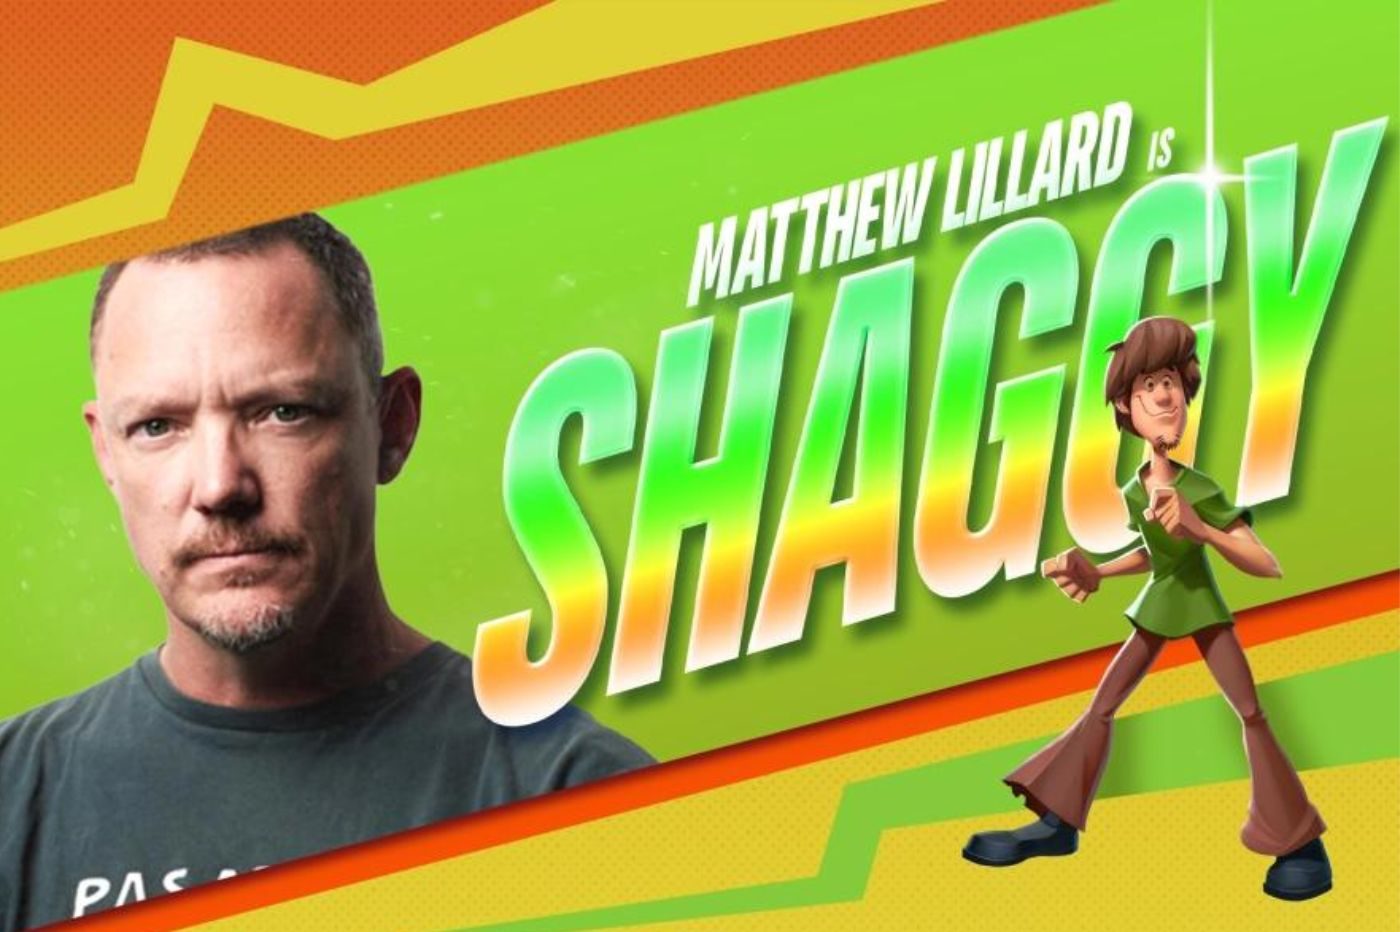 Fiche de présentation de Matthew Lillard en Shaggy dans Multiversus